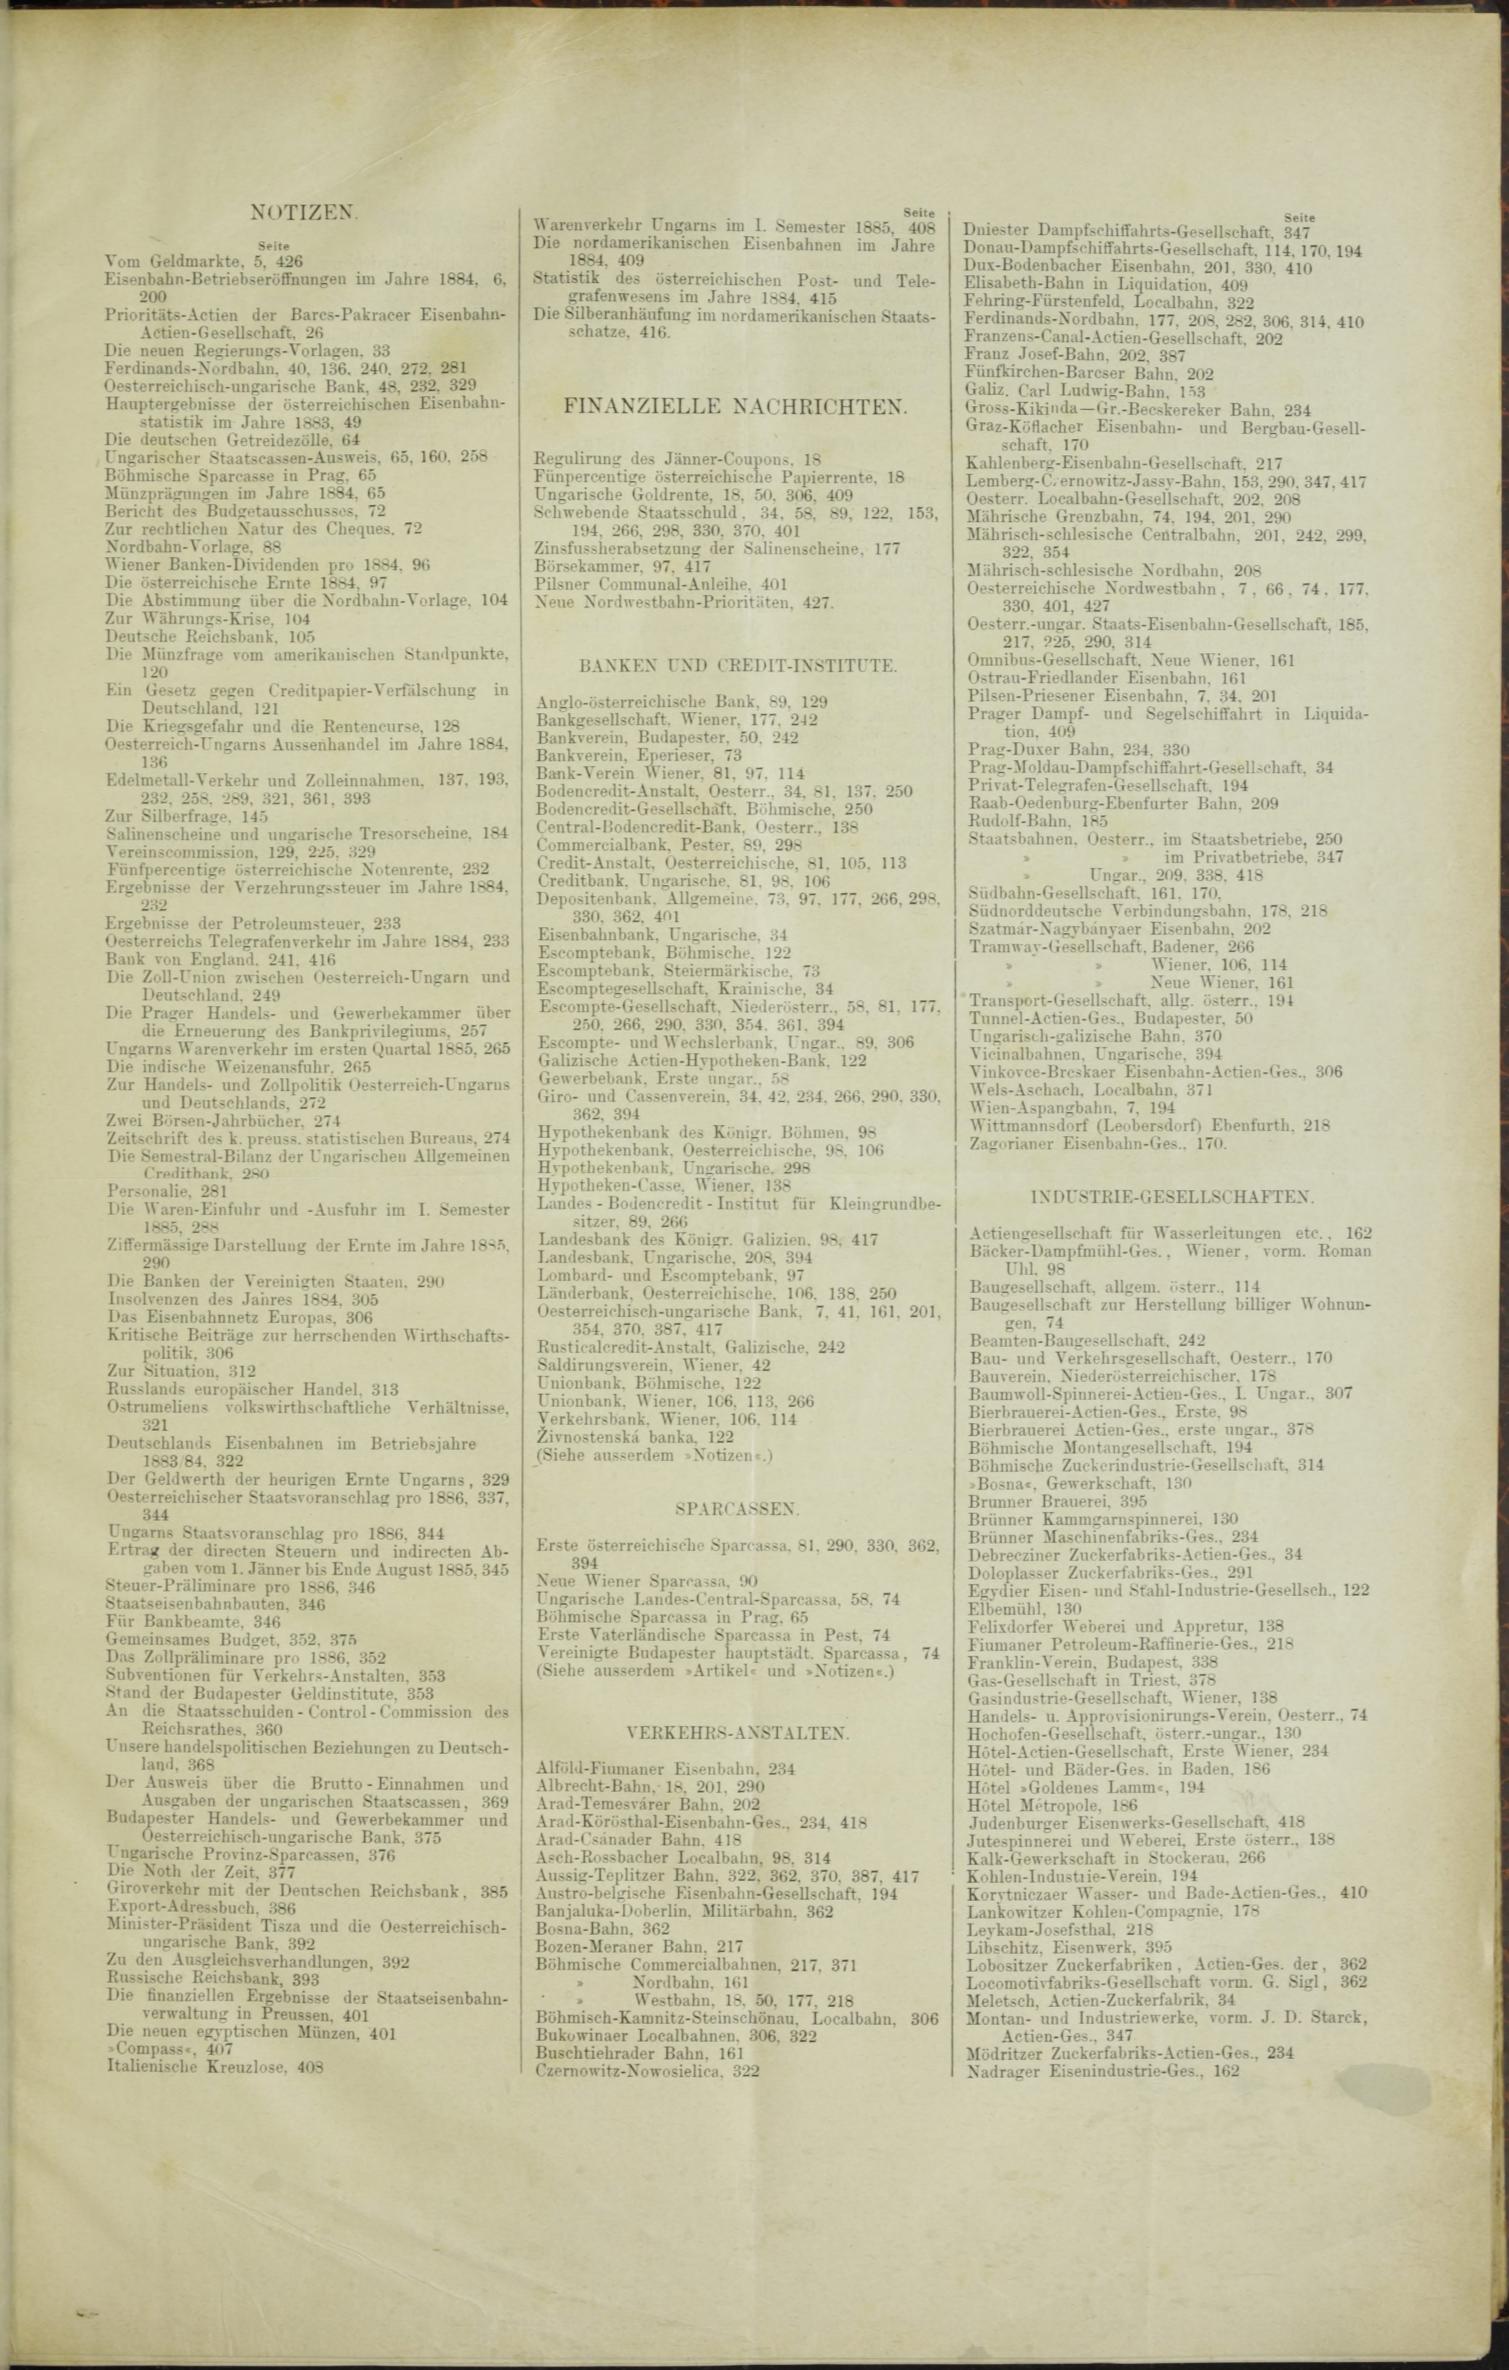 Der Tresor 26.02.1885 - Seite 11